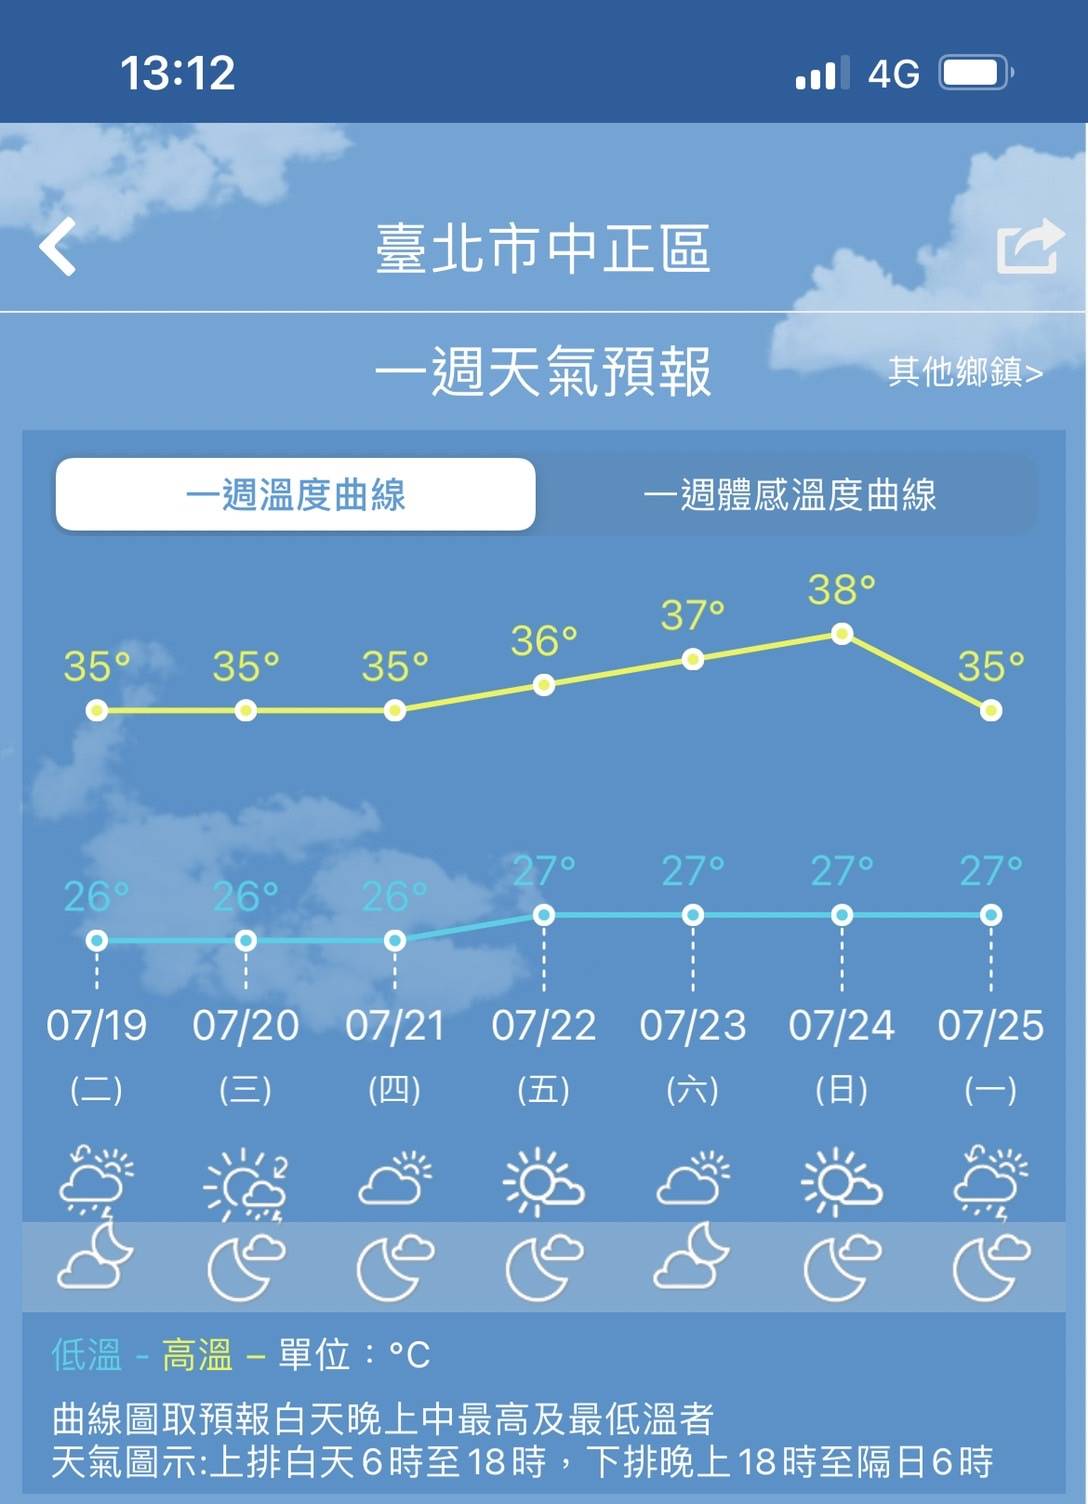 臺北市中正區一週天氣預報